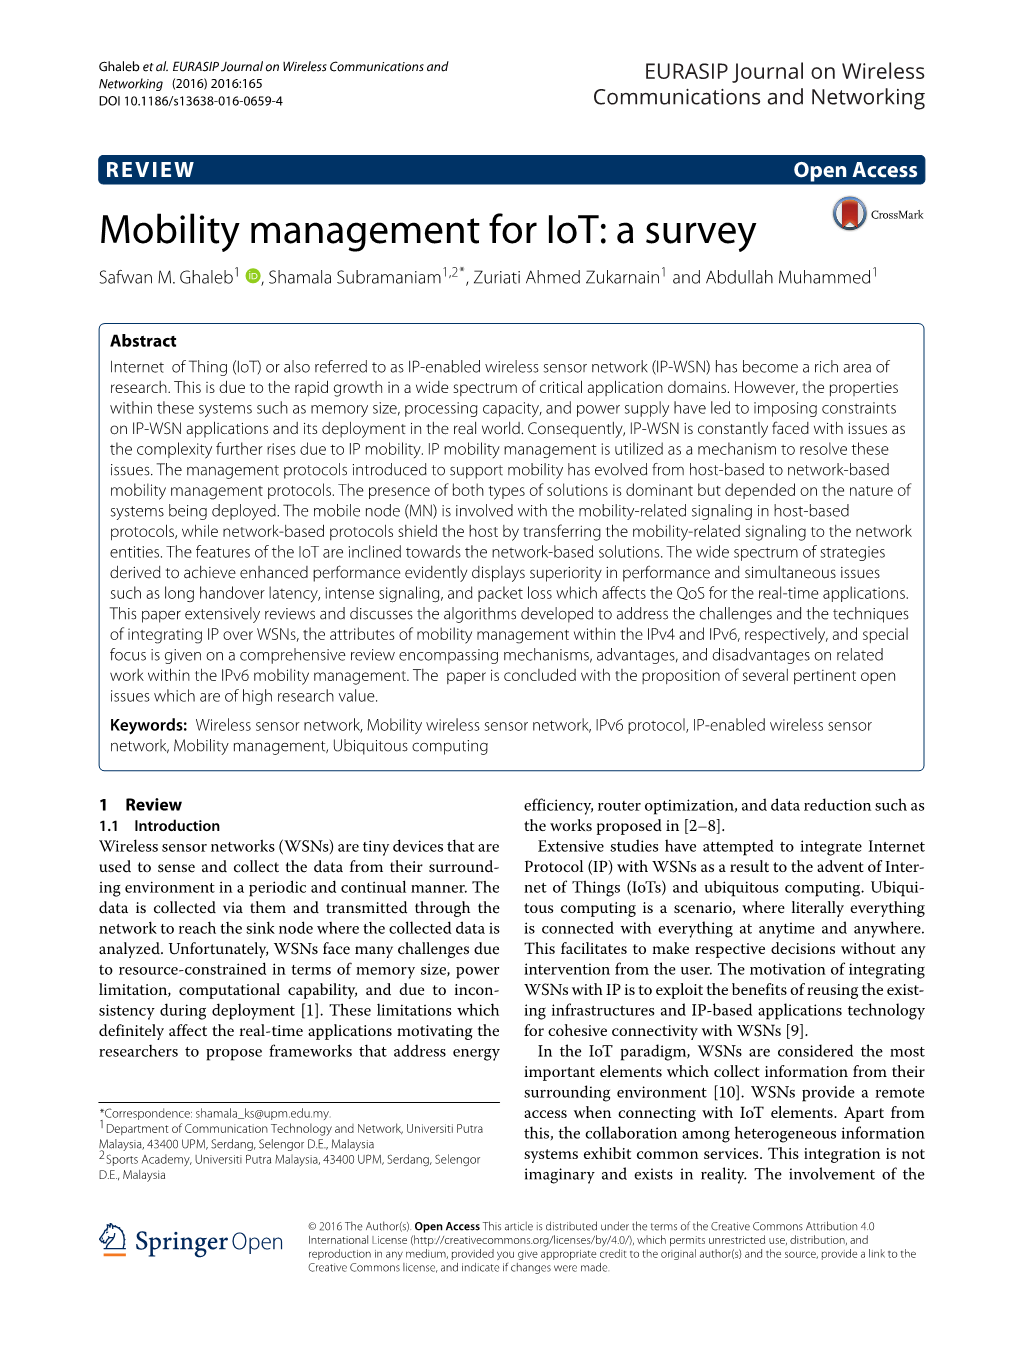 Mobility Management for Iot: a Survey Safwan M